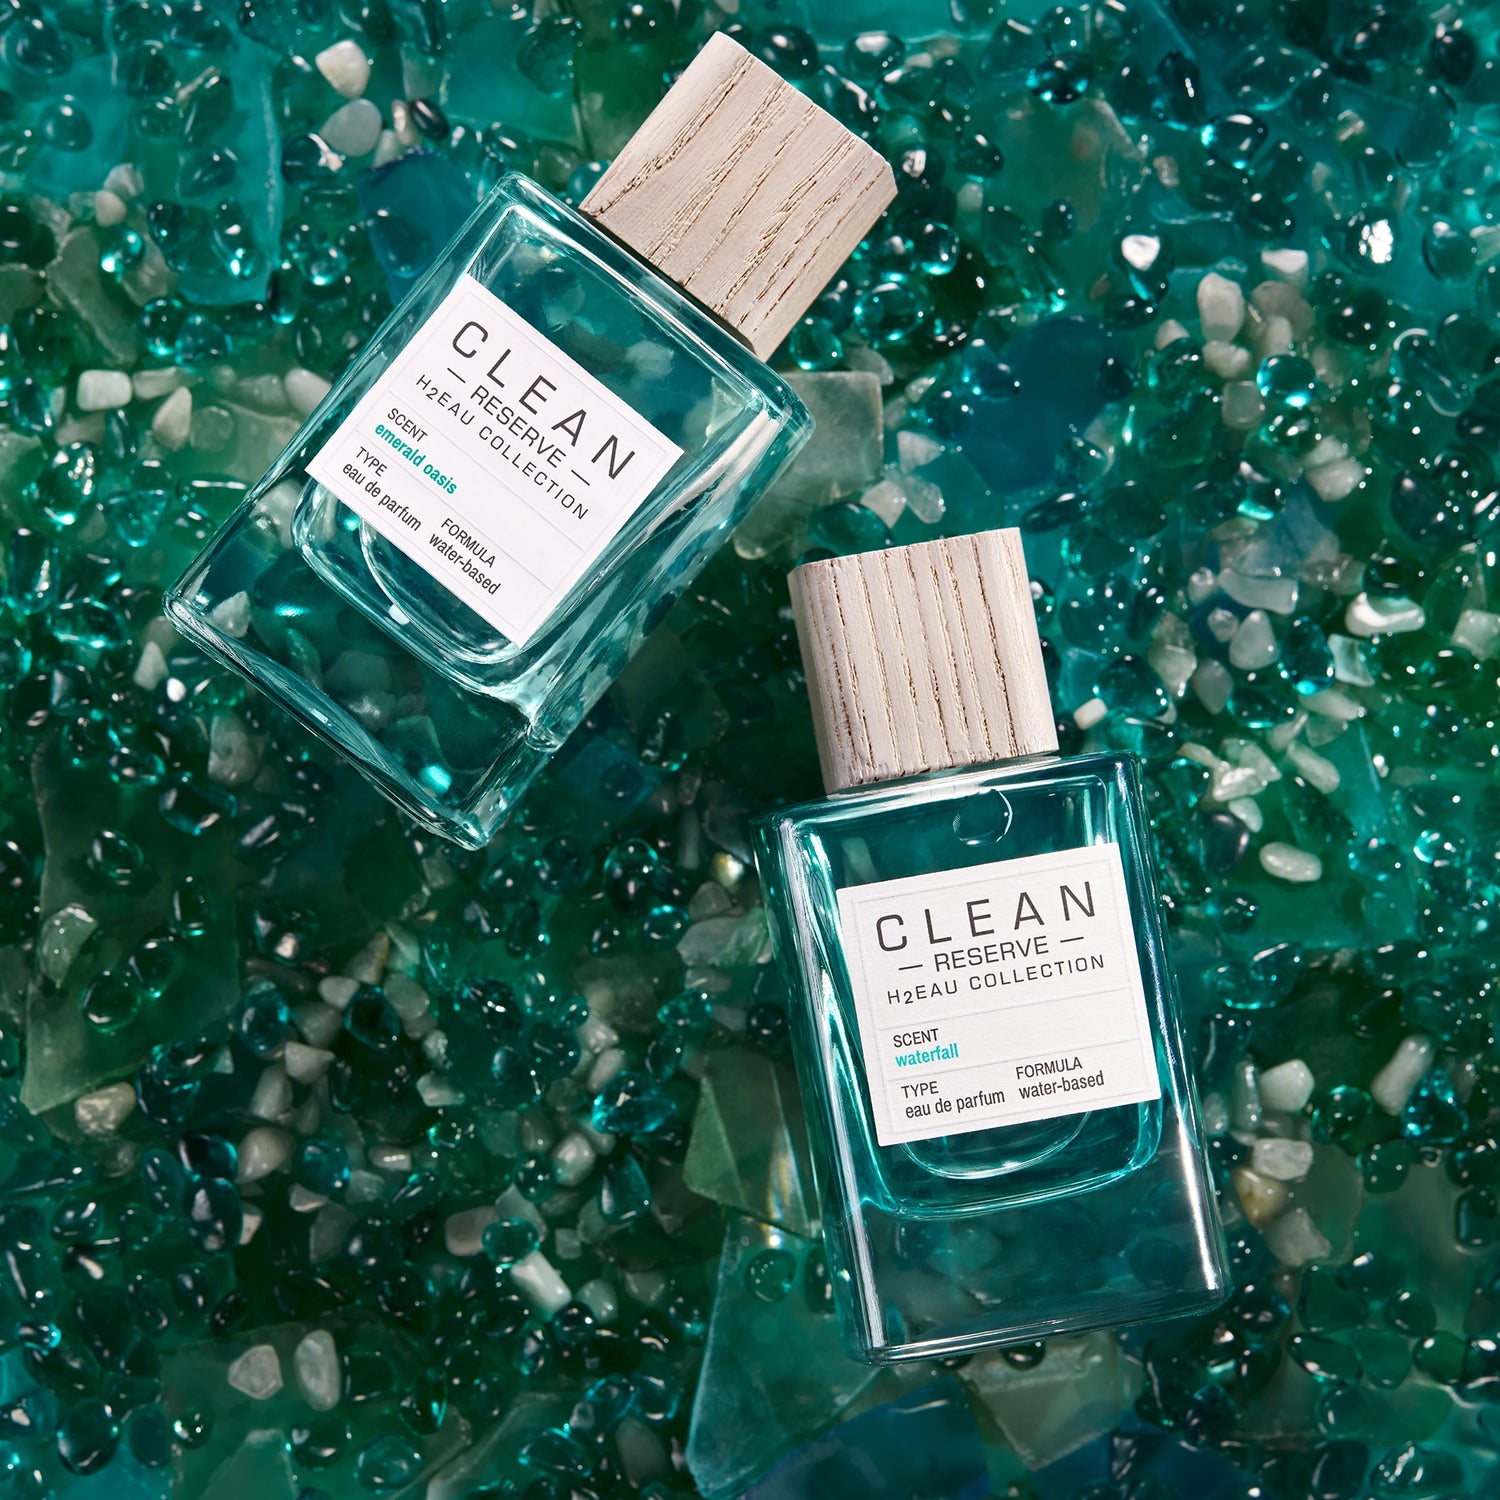 Glass Water Bottle - Emerald